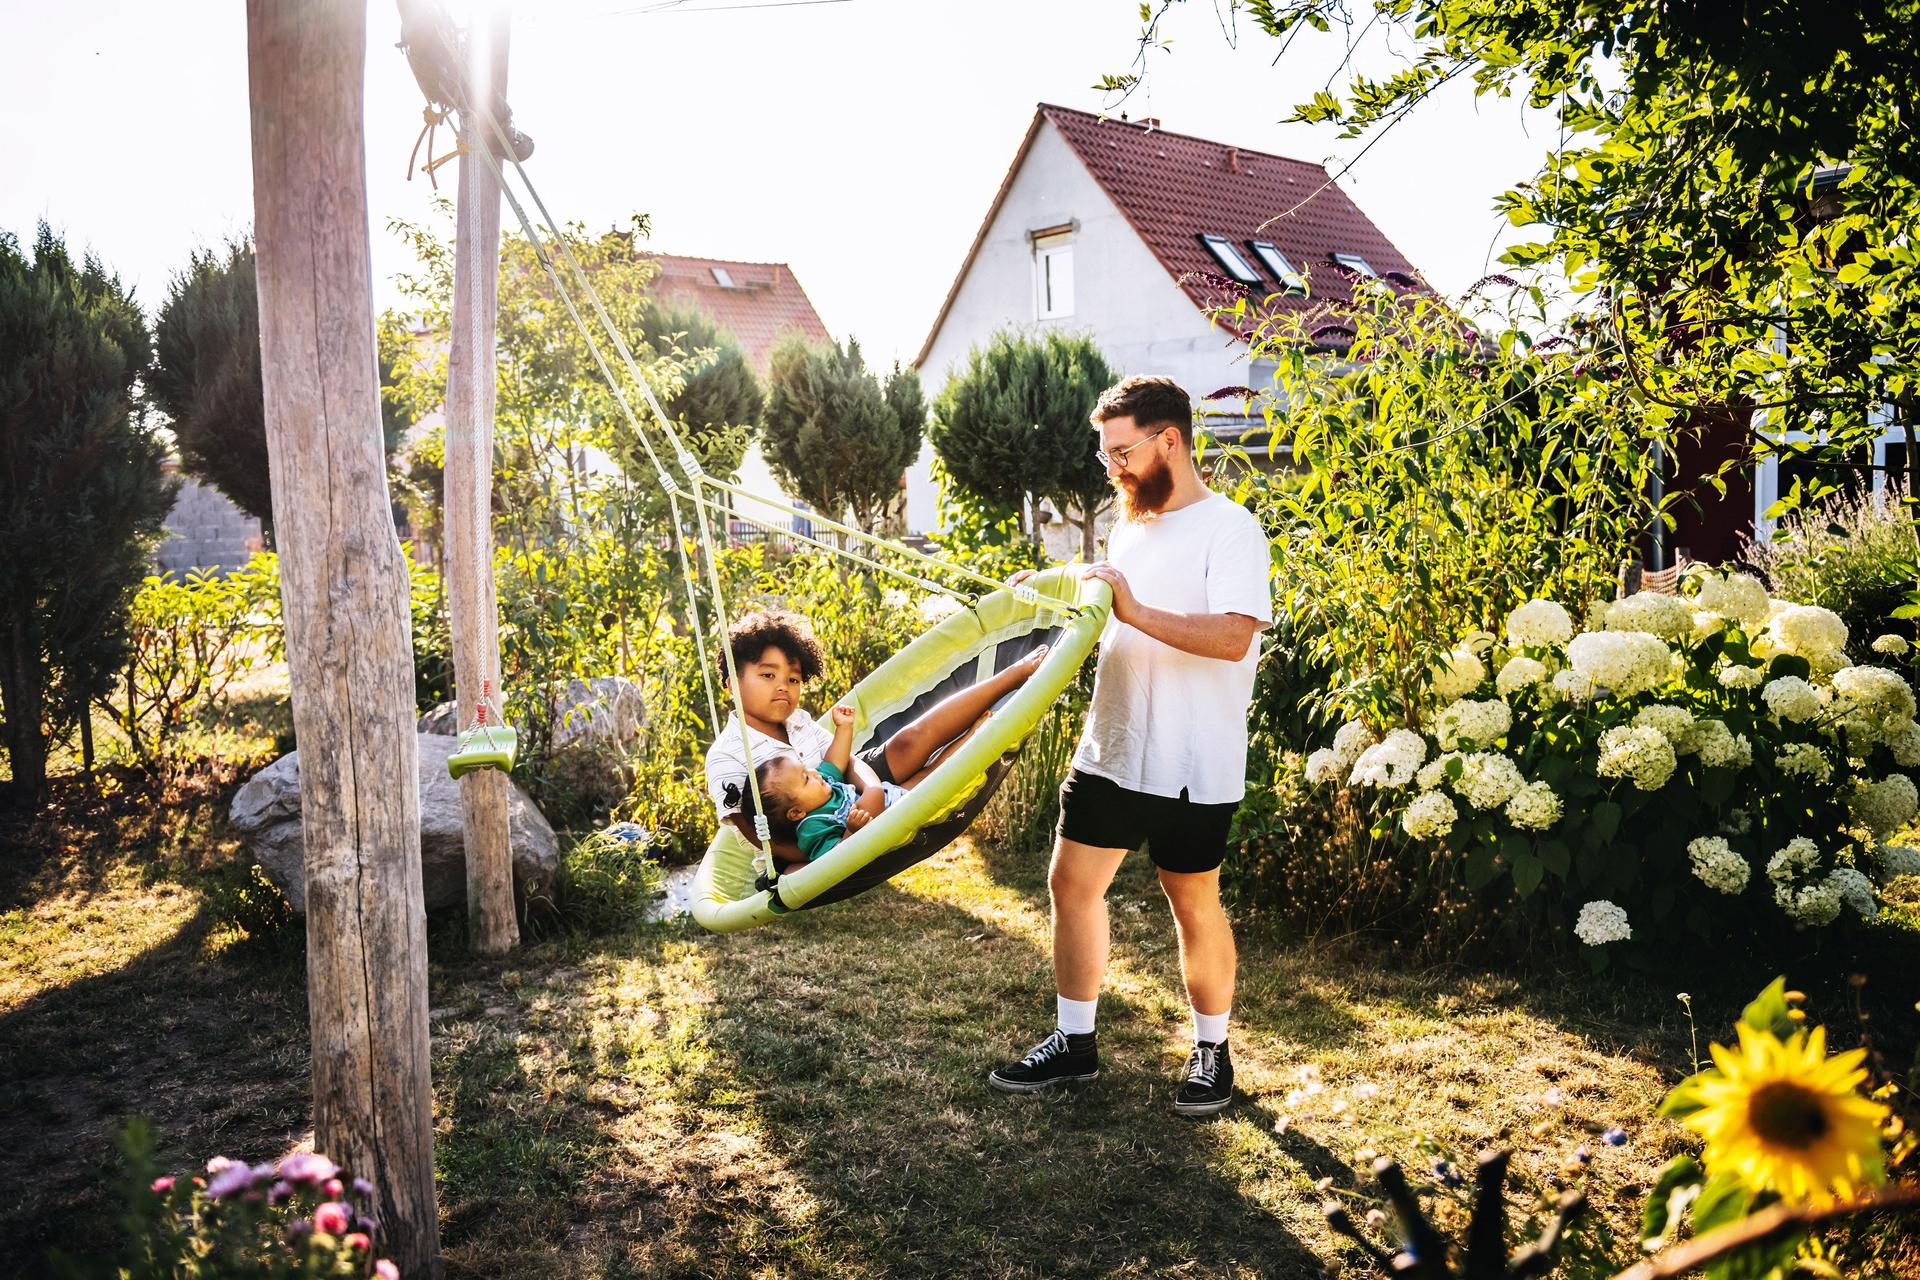 Ein Mann schubst eine große Schaukel mit zwei Kindern in einem grünen Garten an. Im Hintergrund sieht man Einfamilienhäuser.